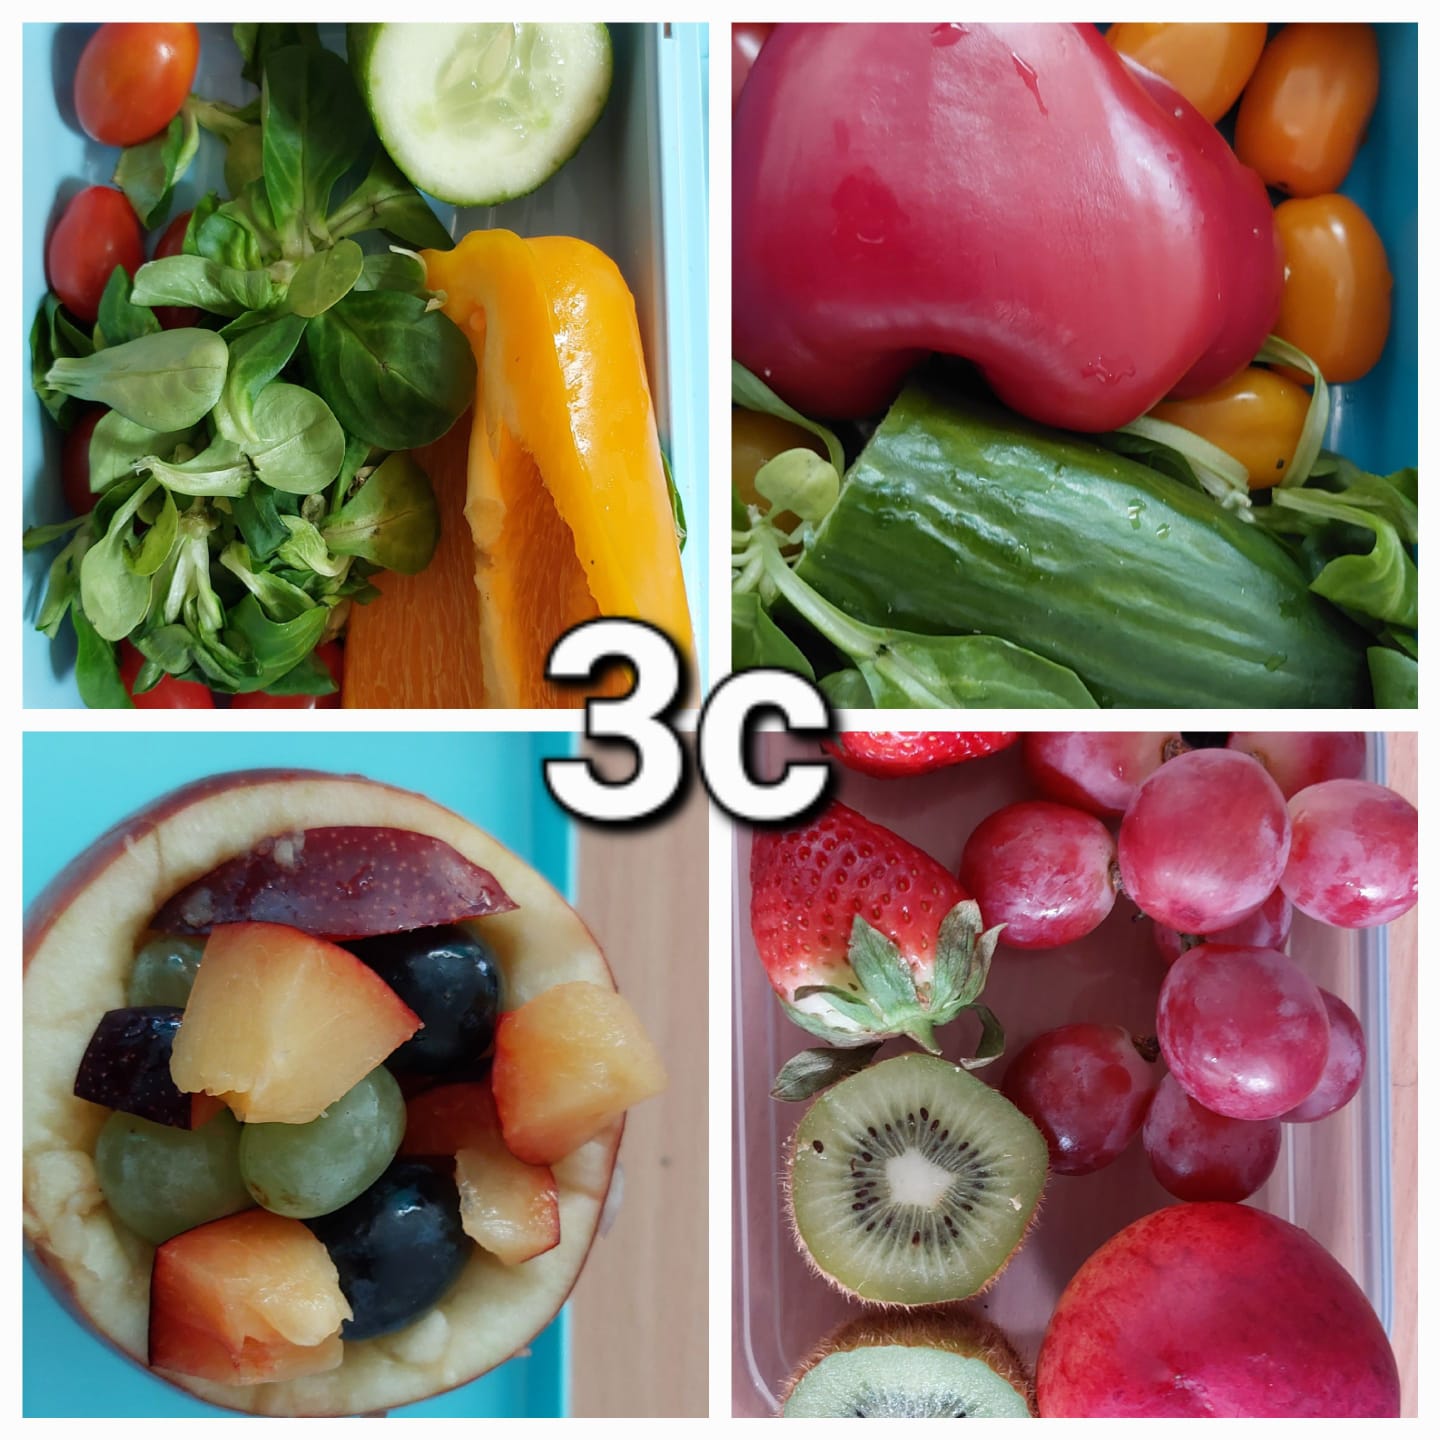 Klasa 3c zastanawiała się m.in. jak przechować warzywa i owoce, by ich nie zmarnować (collage zdjęć).